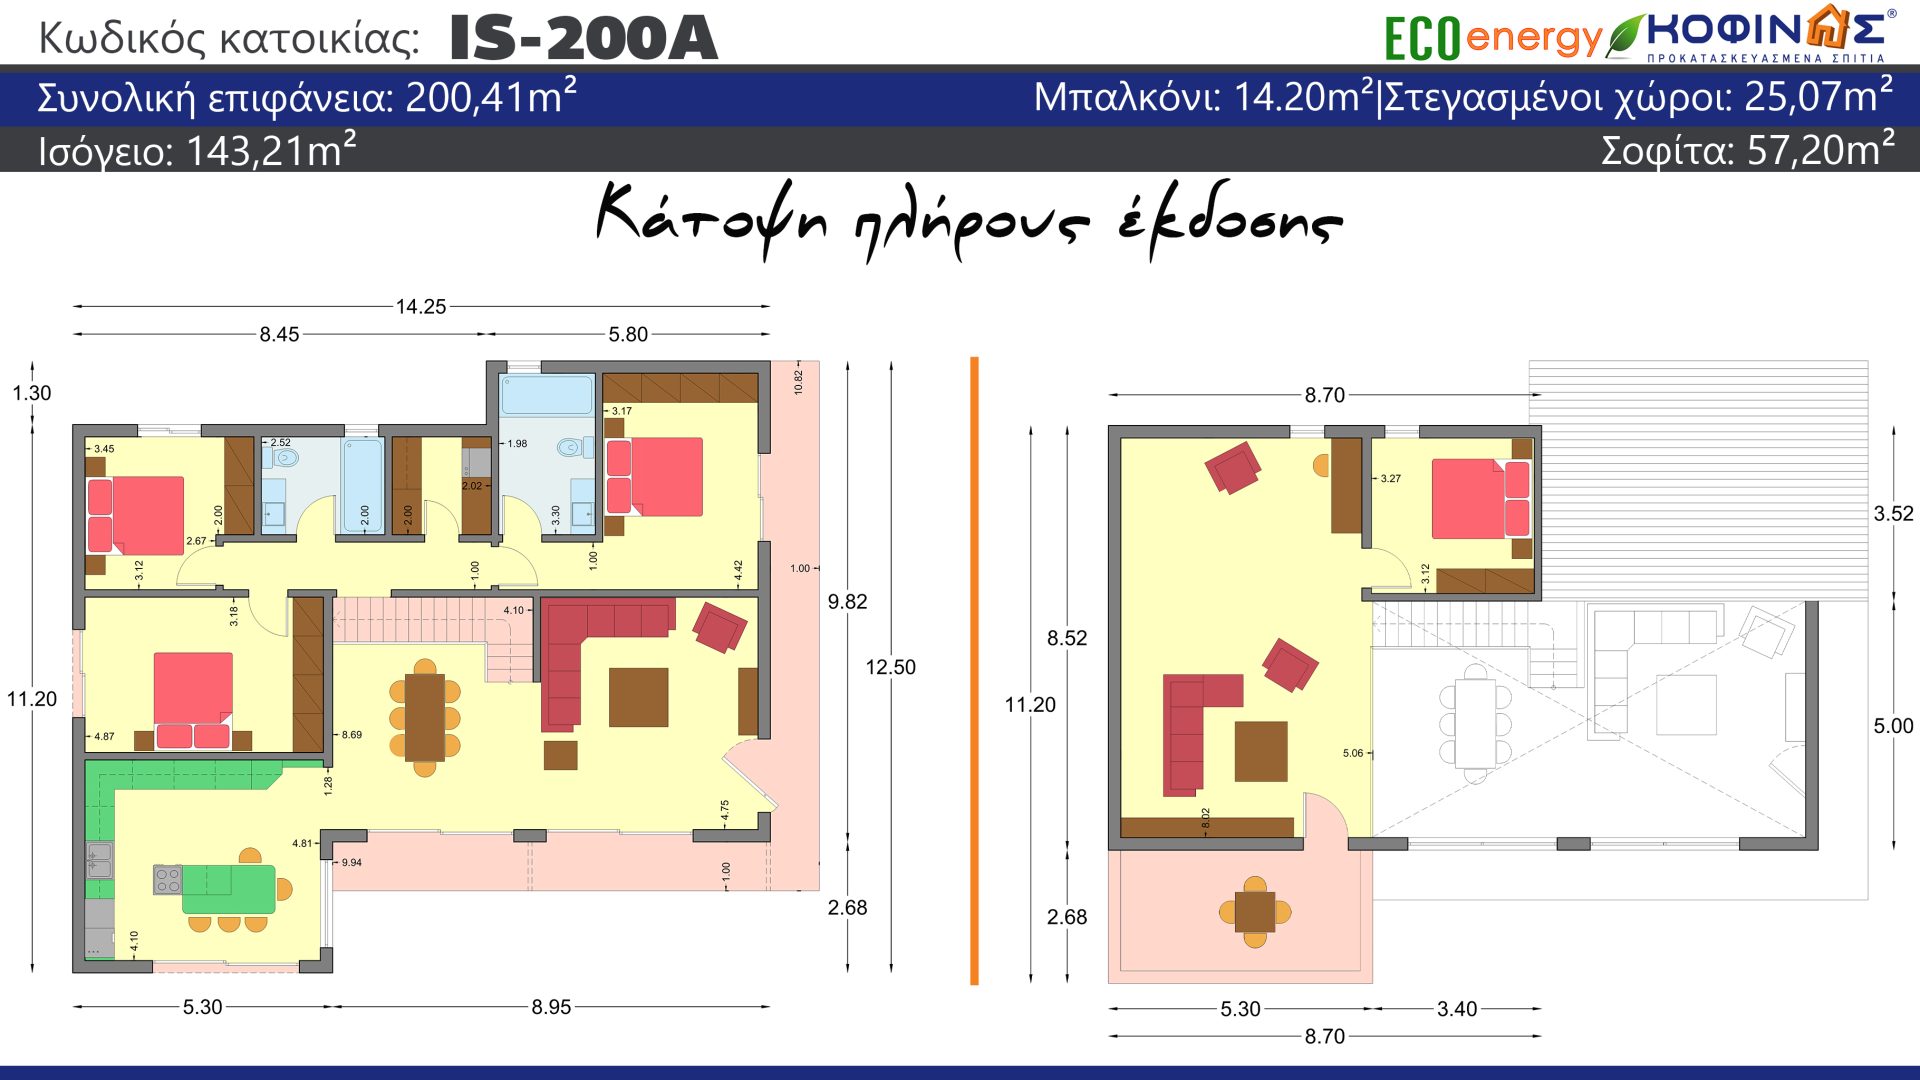 Ισόγεια Κατοικία με Σοφίτα IS-200Α, συνολικής επιφάνειας 200,41 τ.μ., συνολική επιφάνεια στεγασμένων χώρων 25,07 τ.μ. και μπαλκόνι 14.20 τ.μ.